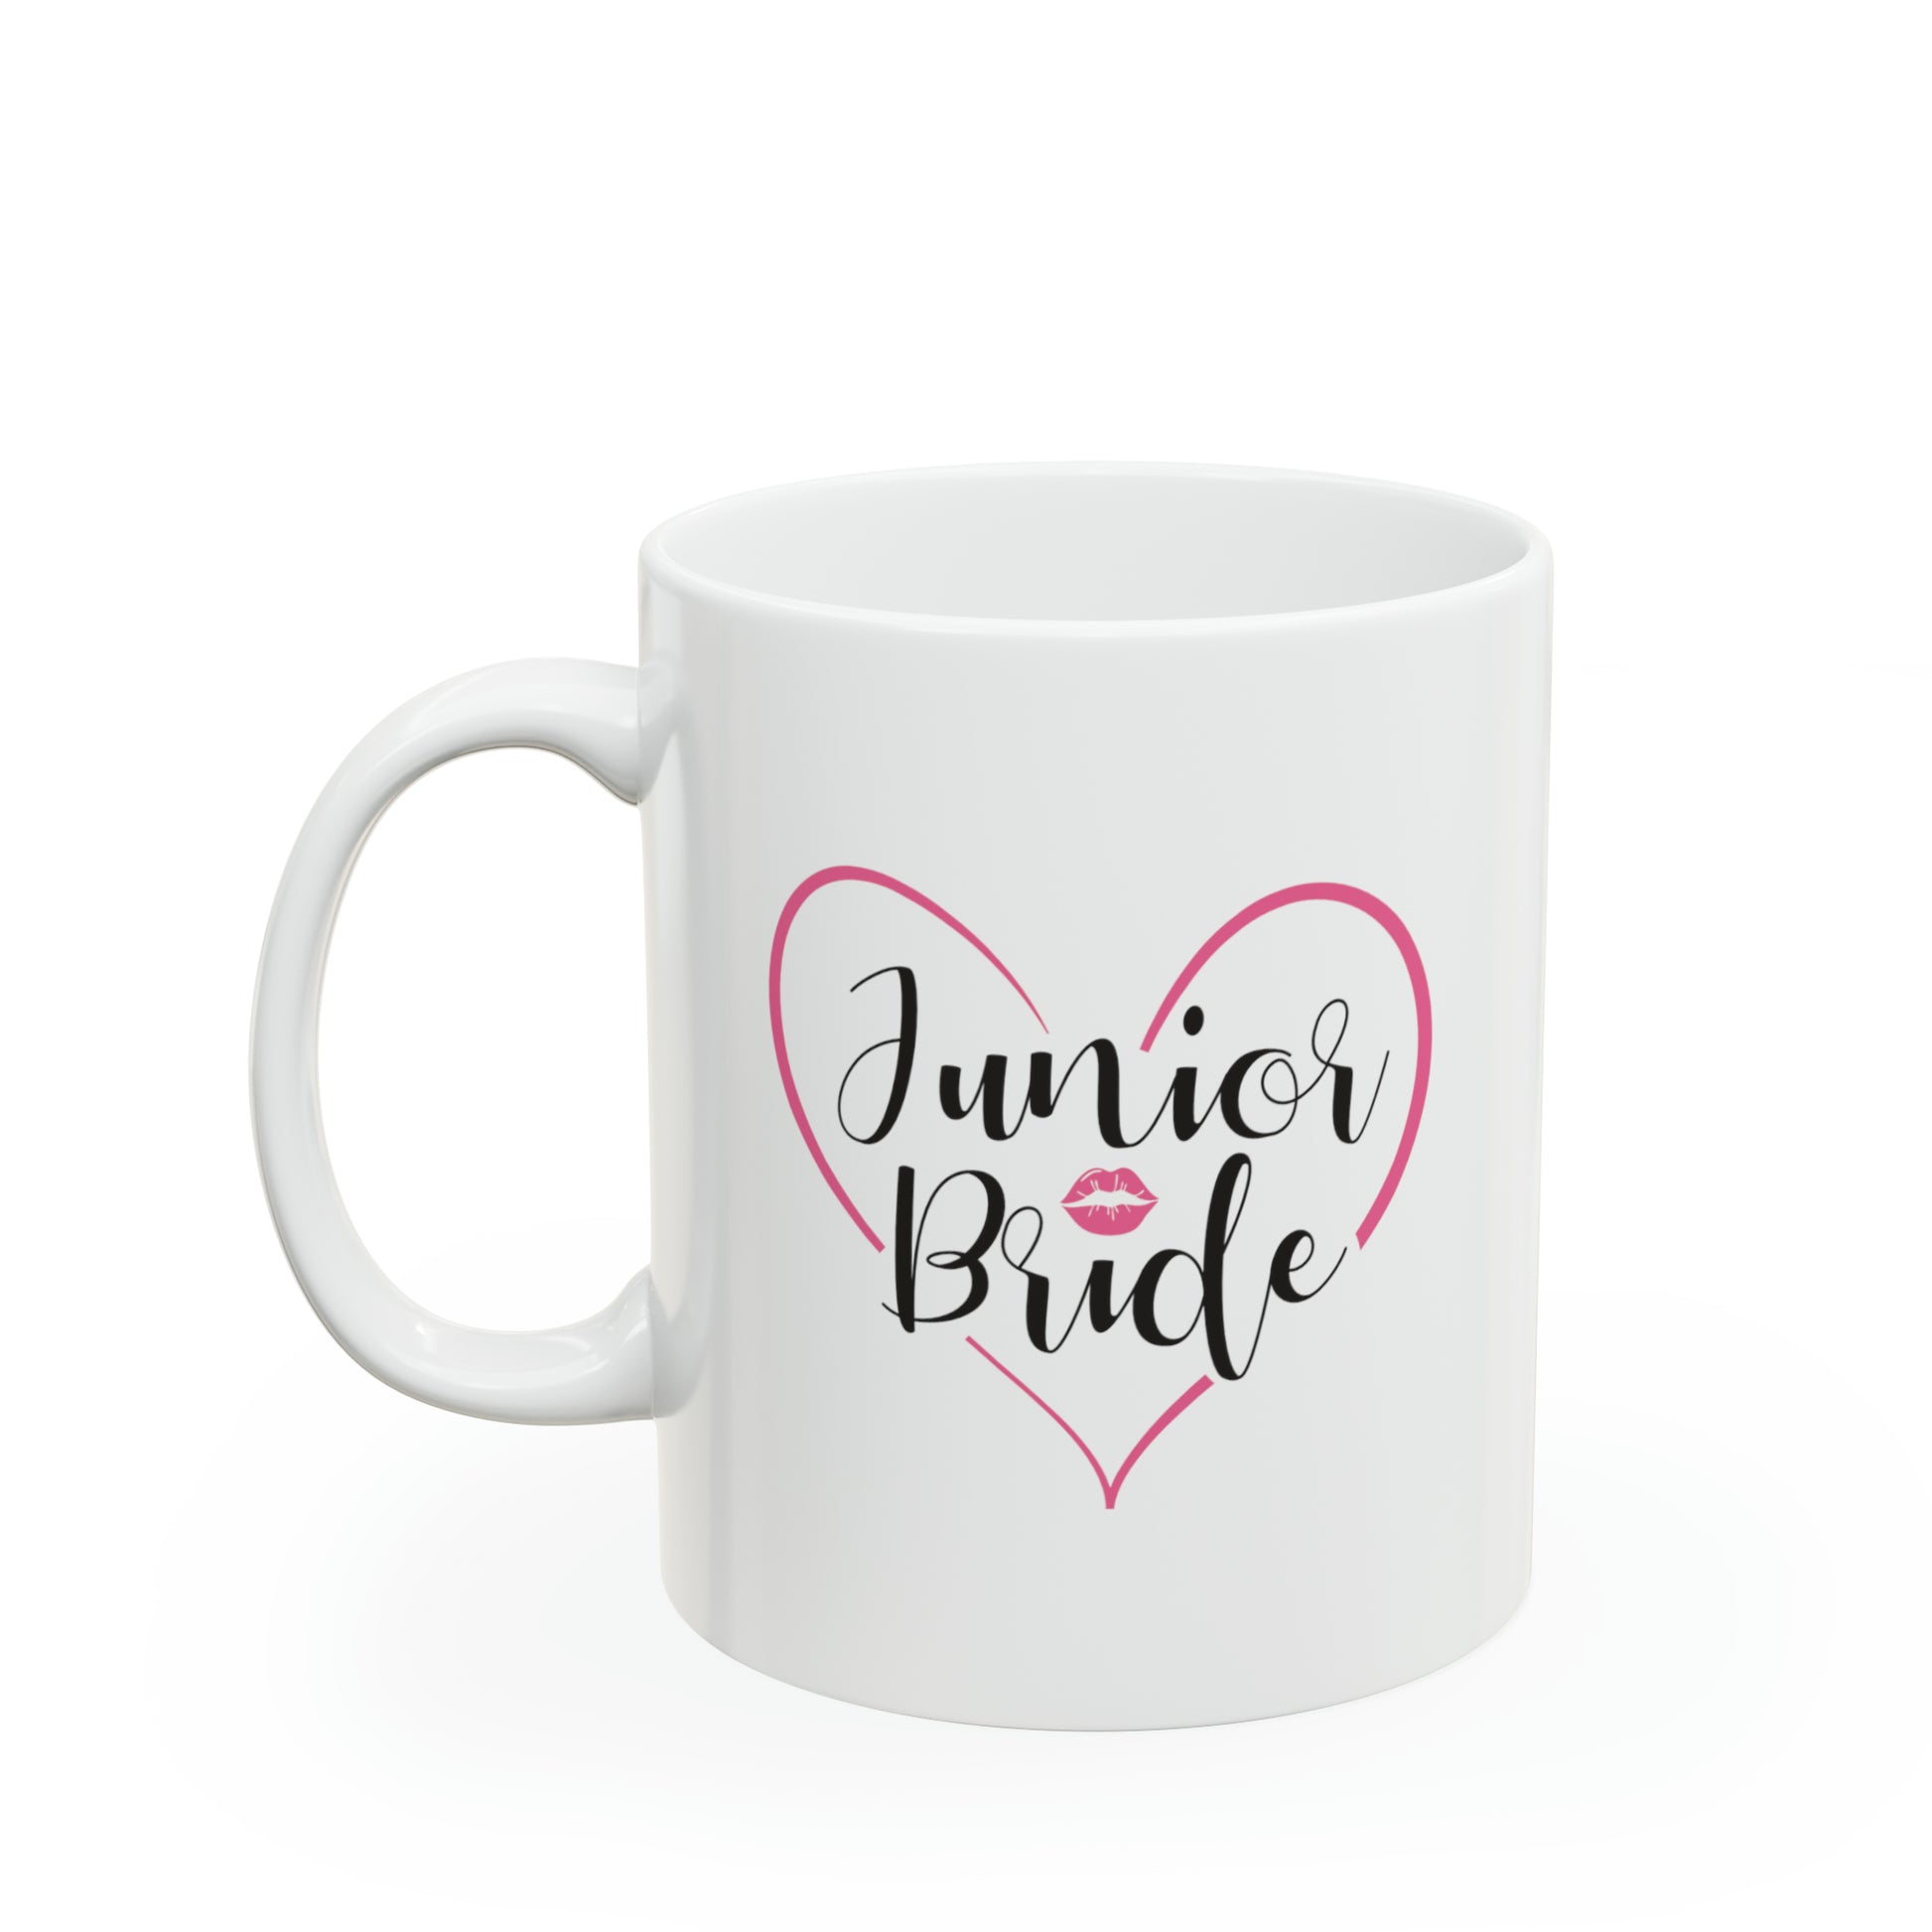 Junior Bride Cocoa Mug - Double Sided 11oz White Ceramic by TheGlassyLass.com